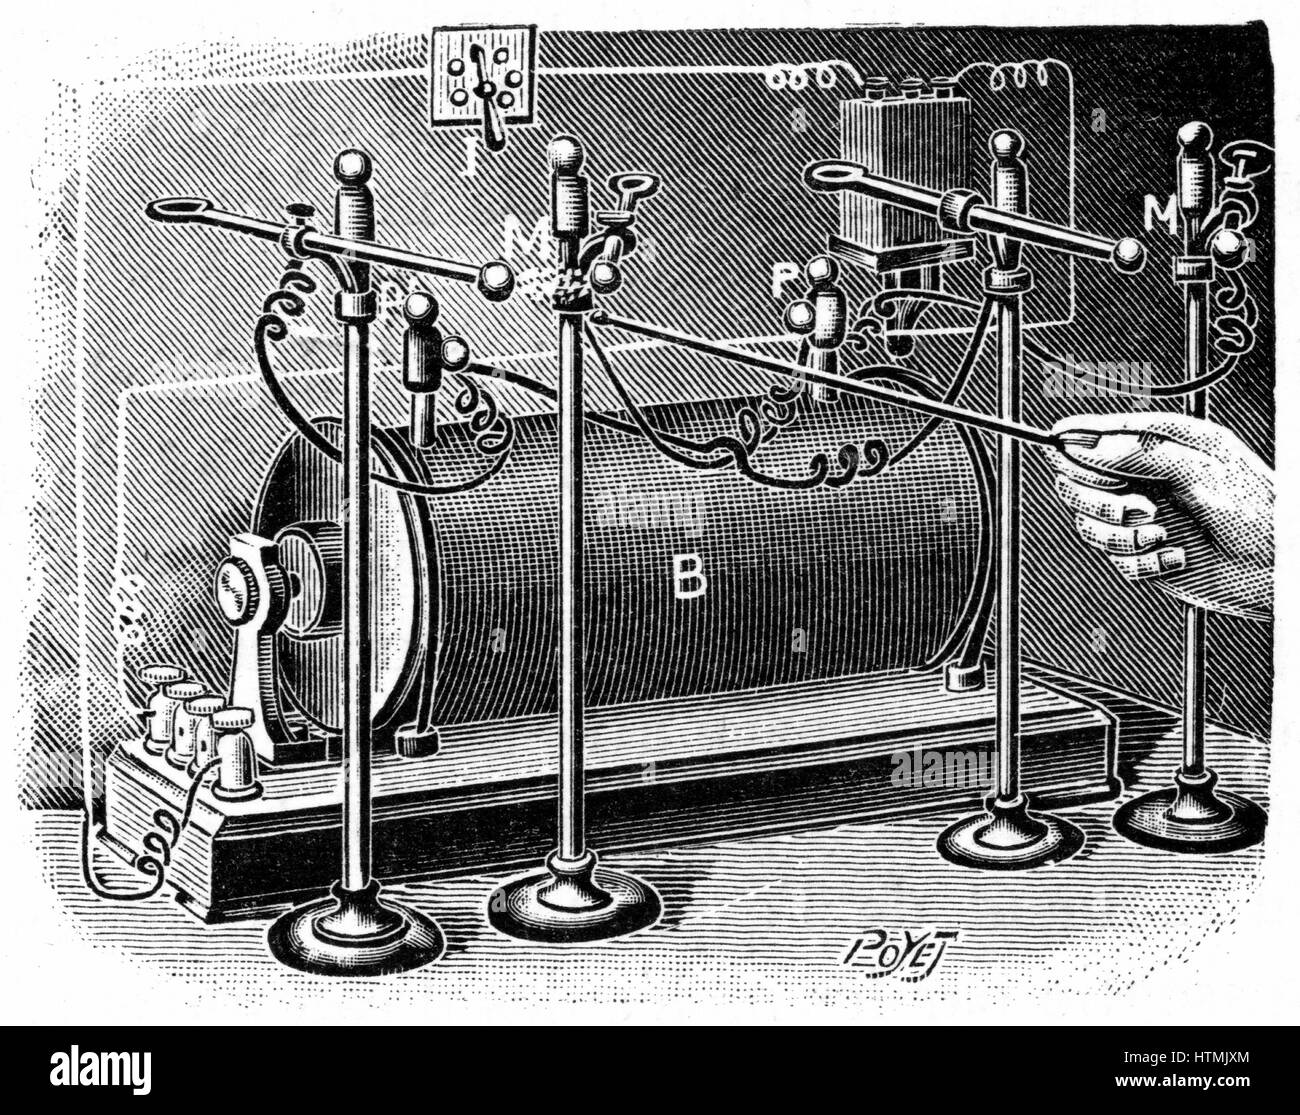 Pfade der Alpha, Beta und Gamma-Strahlen von Radium Probe platziert Spannungsfeld von Elektromagneten, wie in Kurien Labor, Paris. Gravur veröffentlicht Paris, 1904 Stockfoto